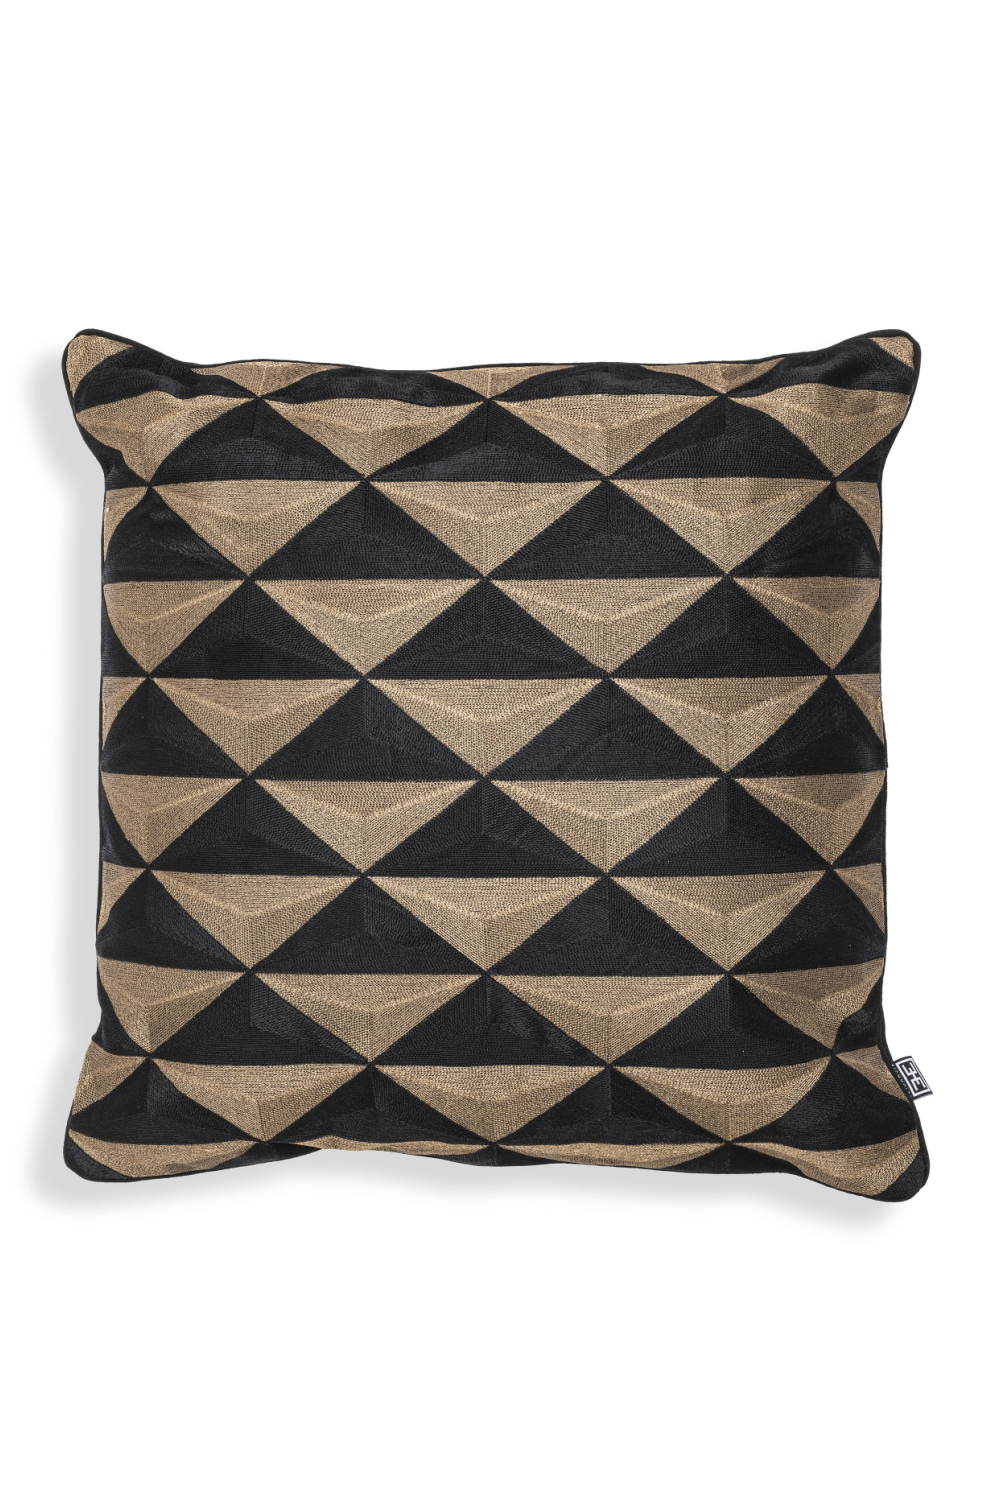 Black & Gold Square Pillow | Eichholtz Mist | Oroa.com